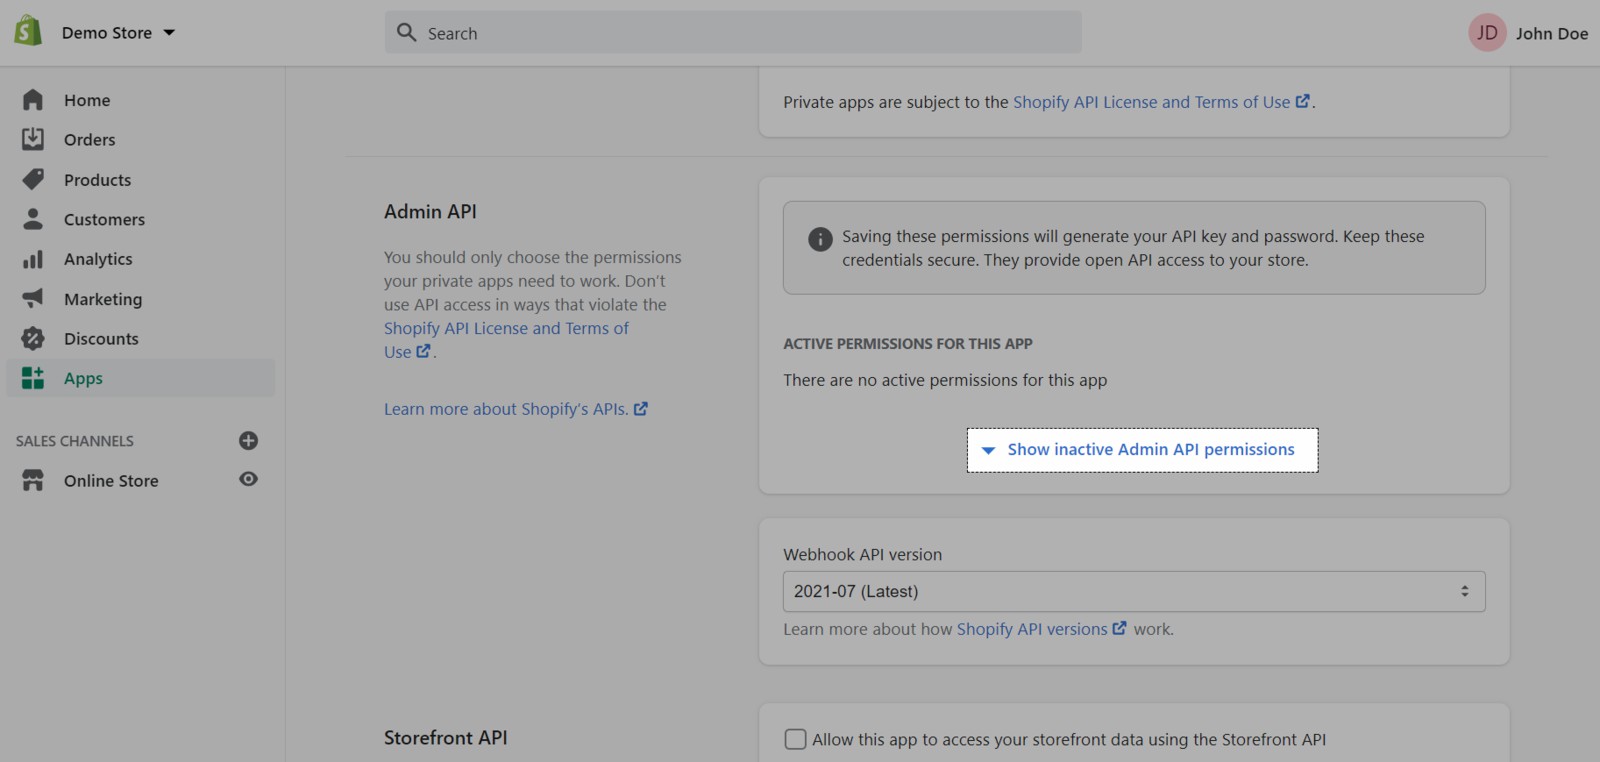 Bạn tiếp tục bằng cách nhấp vào Show inactive Admin API permissions.